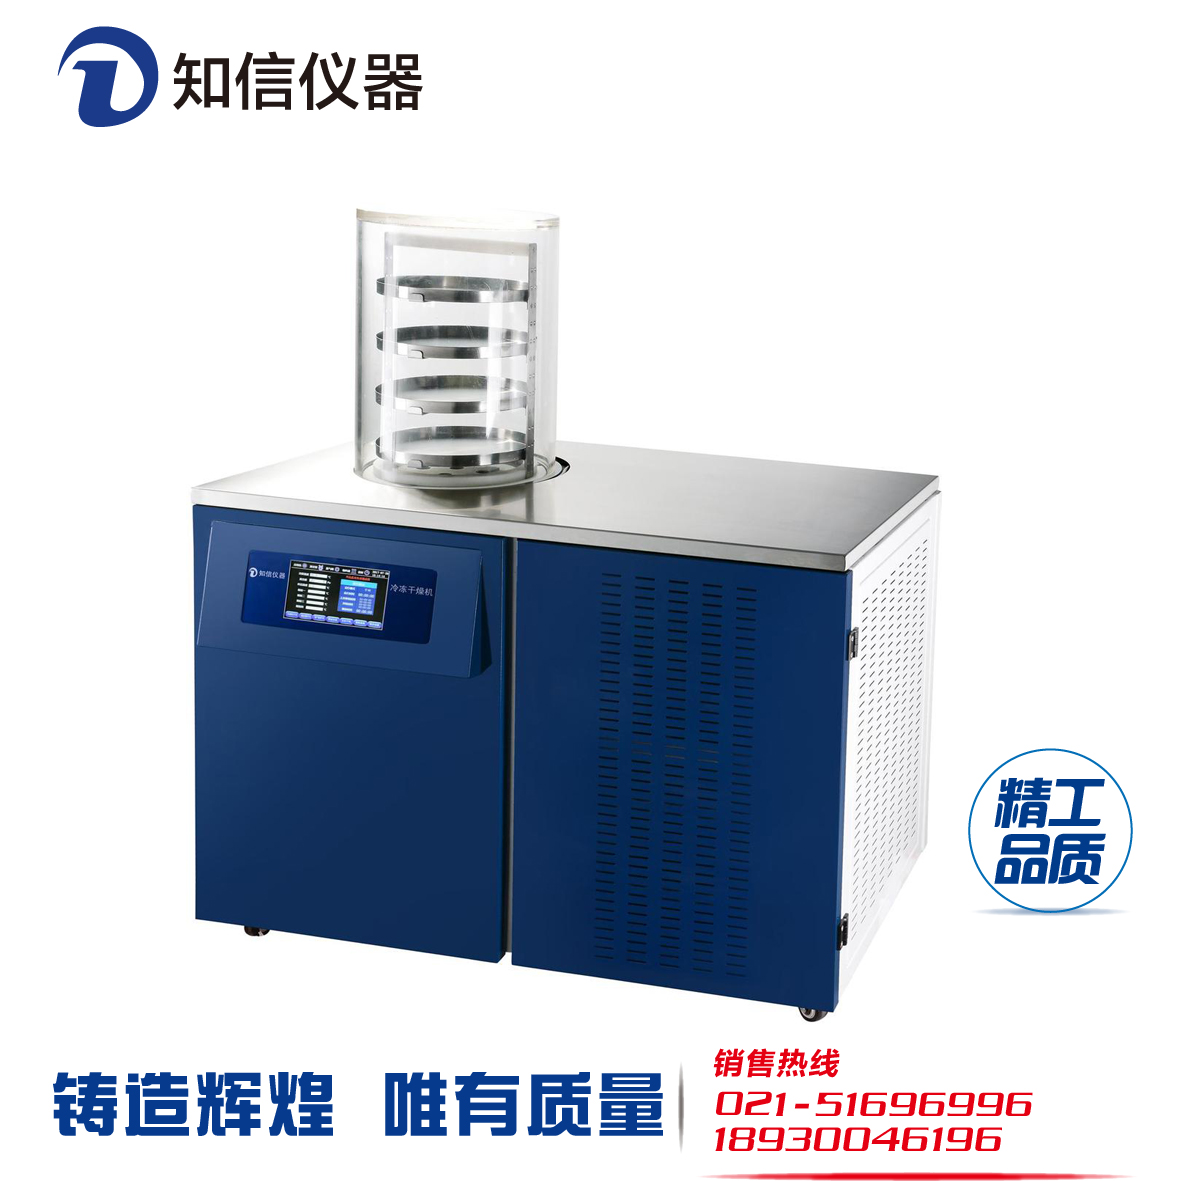 上海知信冷冻干燥机ZX-LGJ-27冻干机 小型真空冷冻干燥机图片